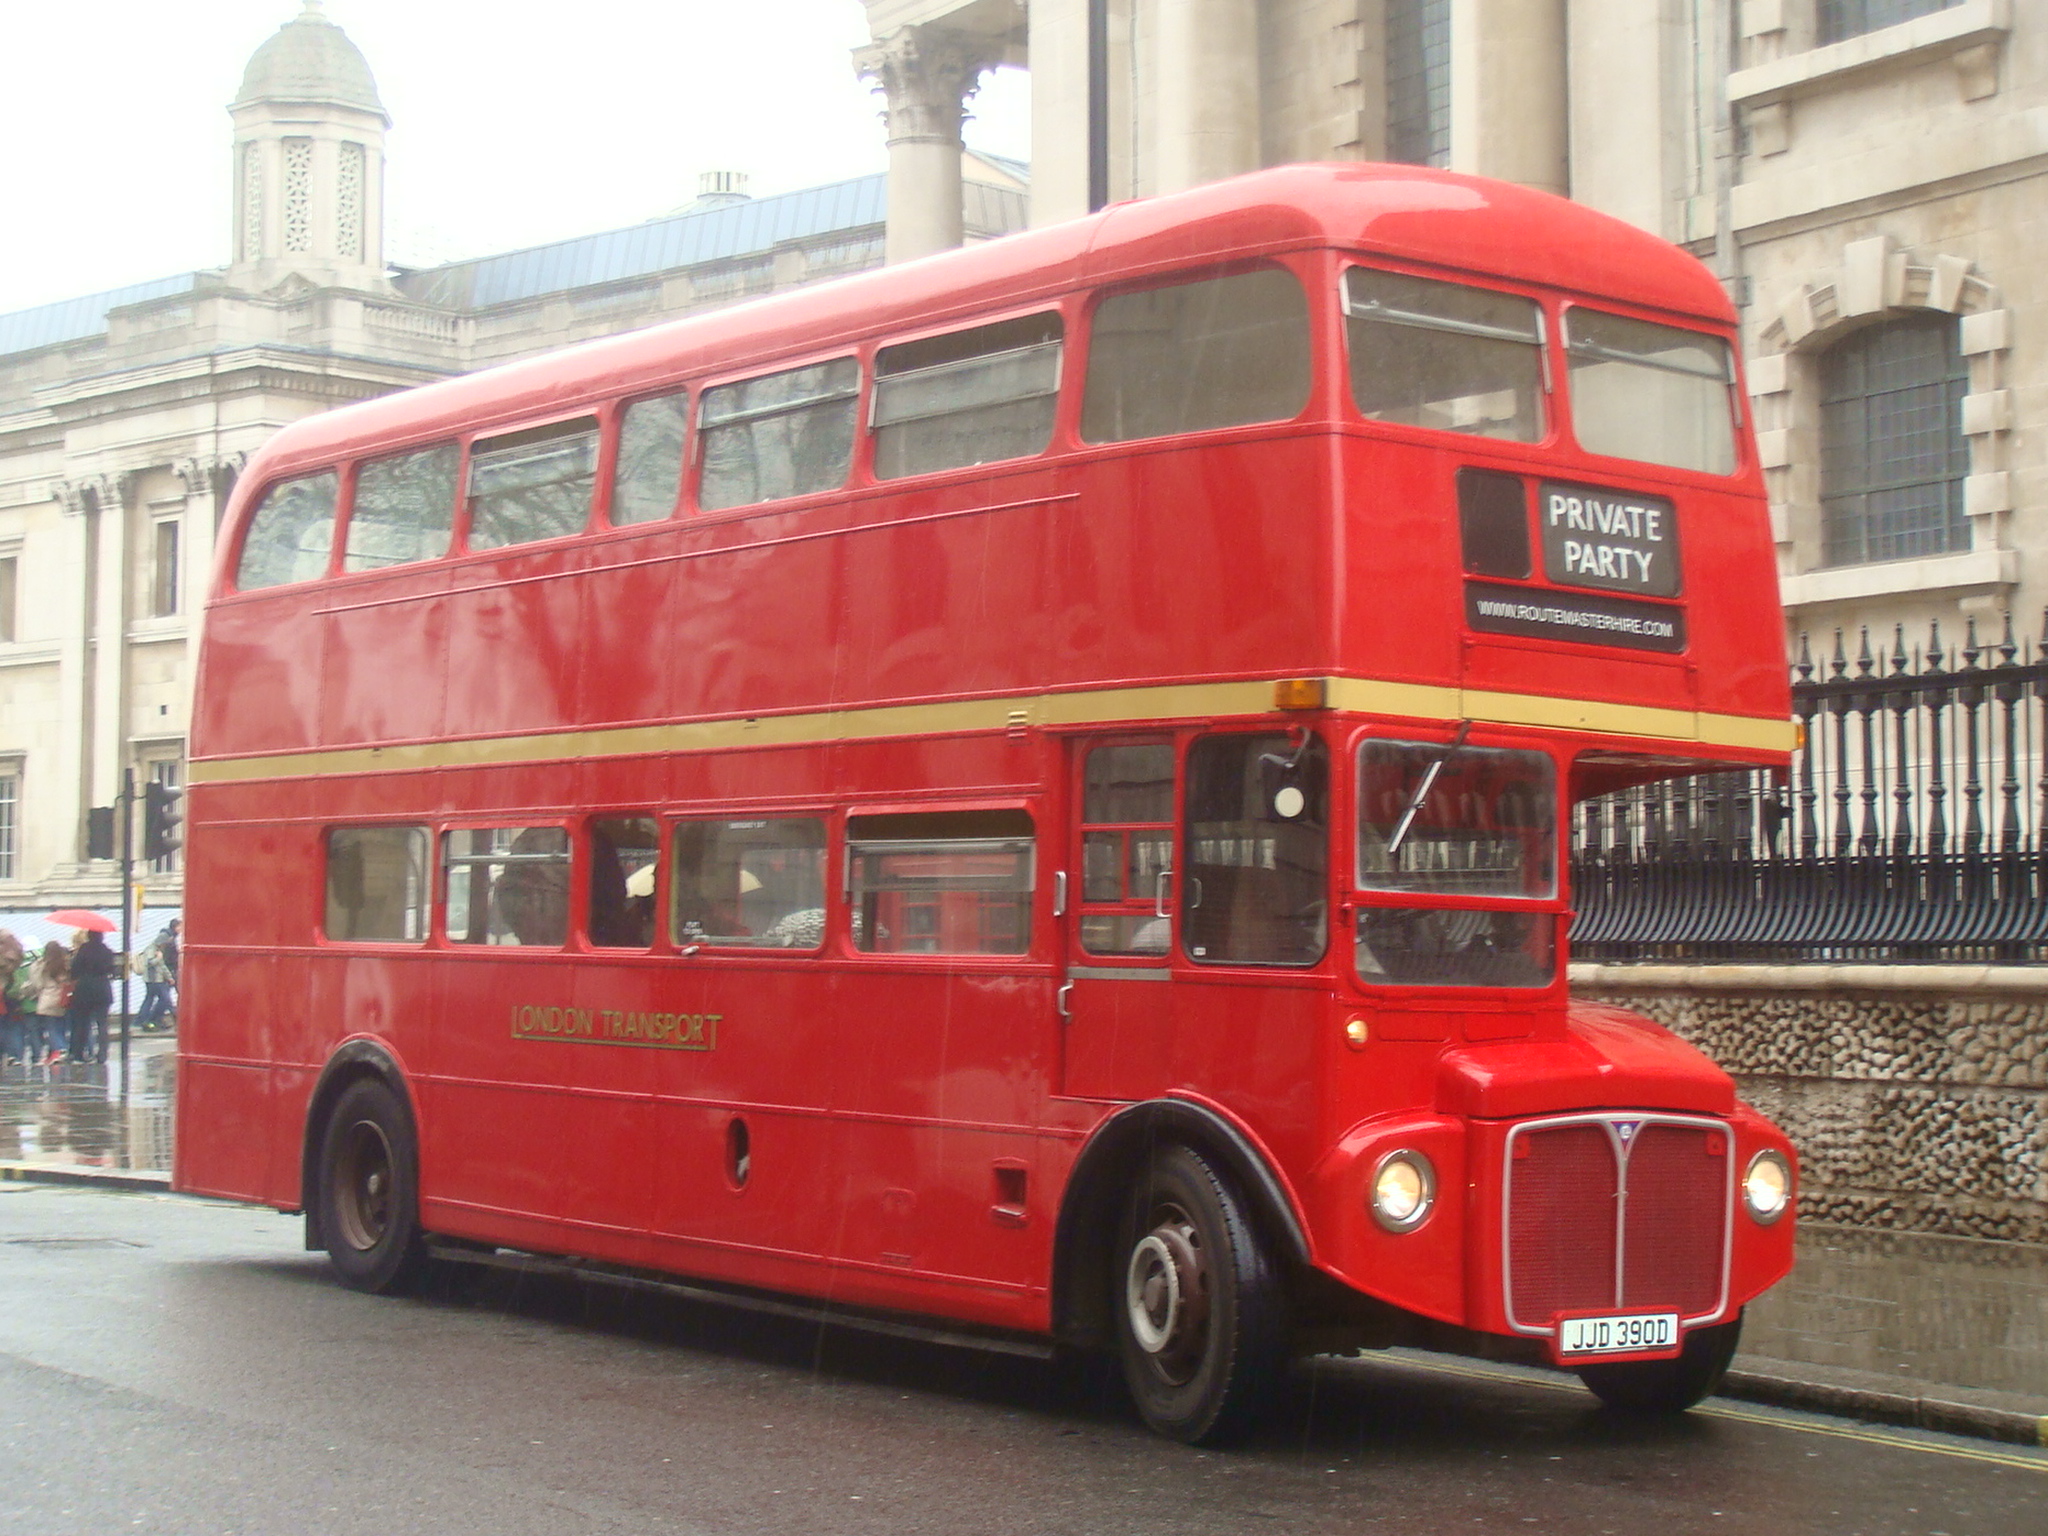 a double decker bus is shown in london